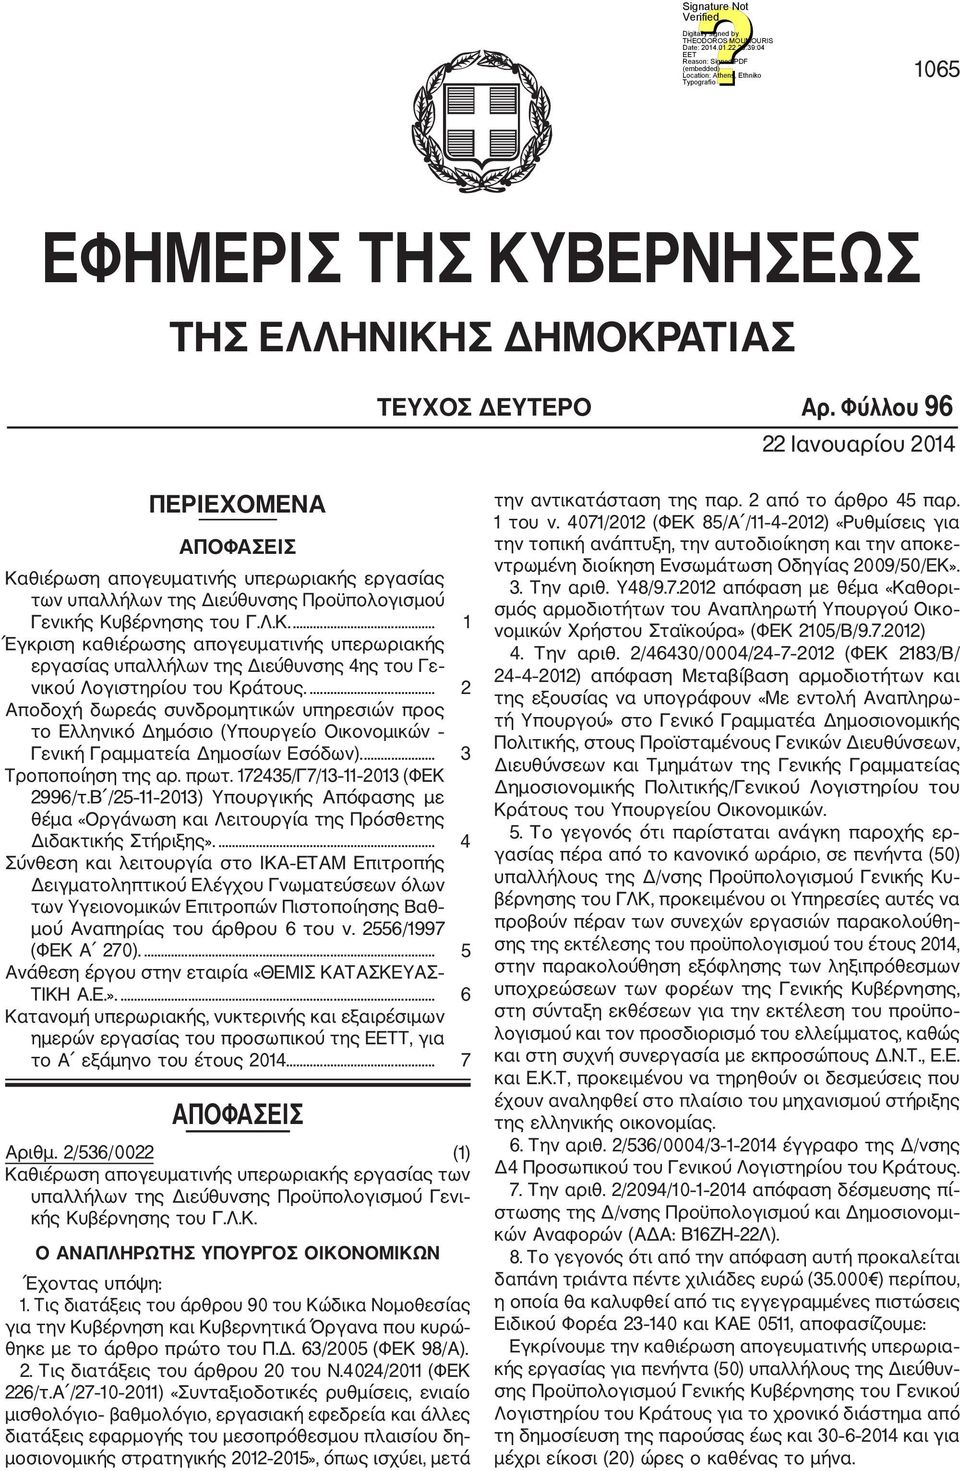 ... 2 Αποδοχή δωρεάς συνδρομητικών υπηρεσιών προς το Ελληνικό Δημόσιο (Υπουργείο Οικονομικών Γενική Γραμματεία Δημοσίων Εσόδων).... 3 Τροποποίηση της αρ. πρωτ. 172435/Γ7/13 11 2013 (ΦΕΚ 2996/τ.